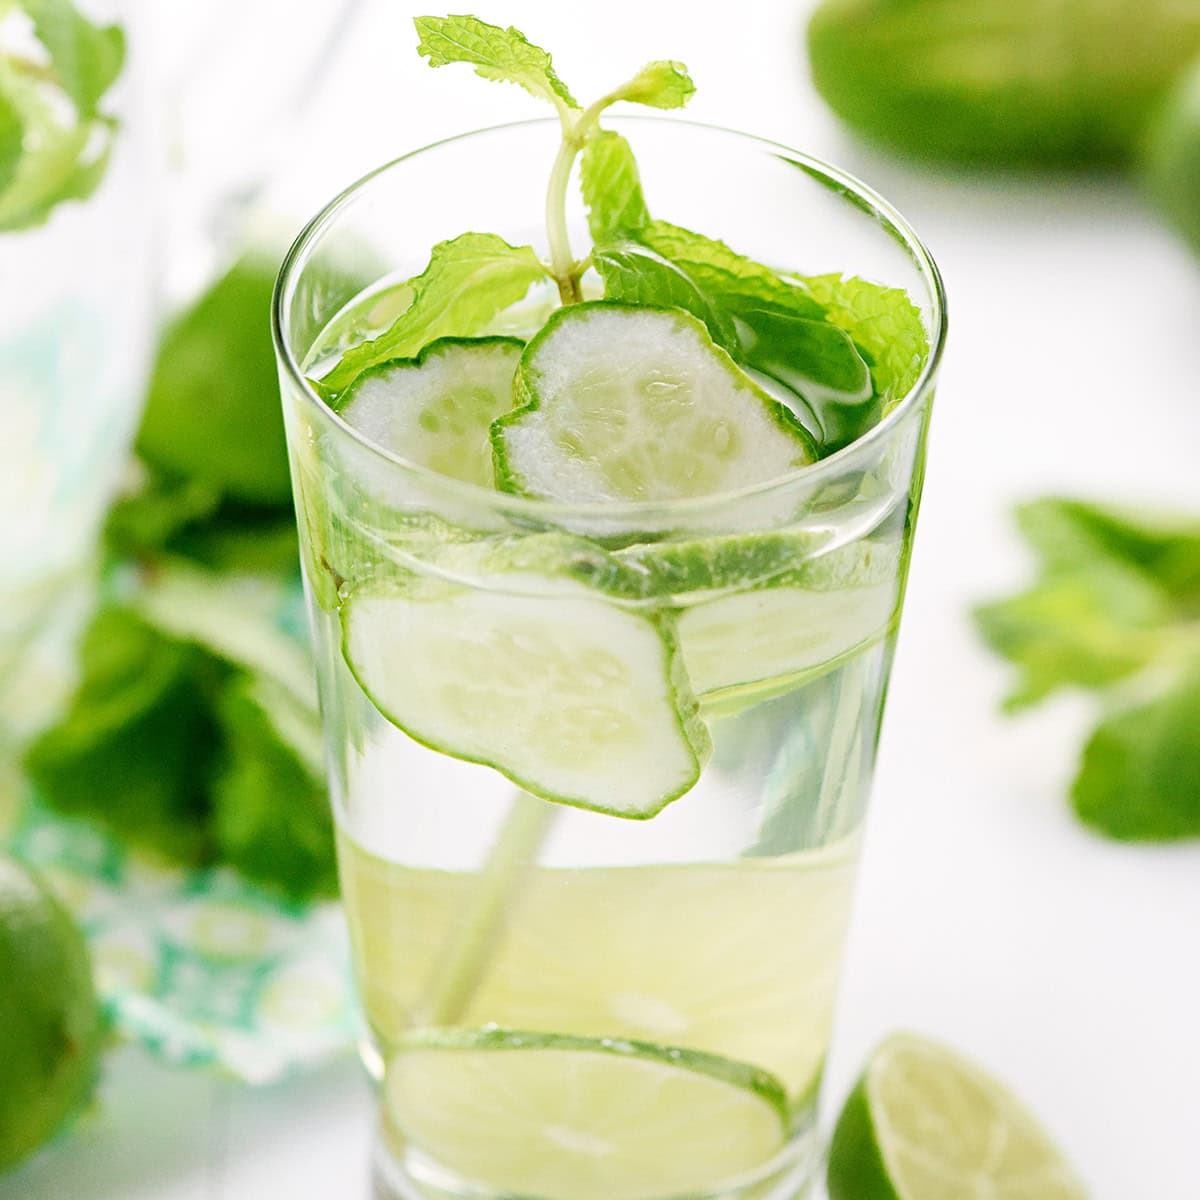 Cucumber Mint Water in glass.